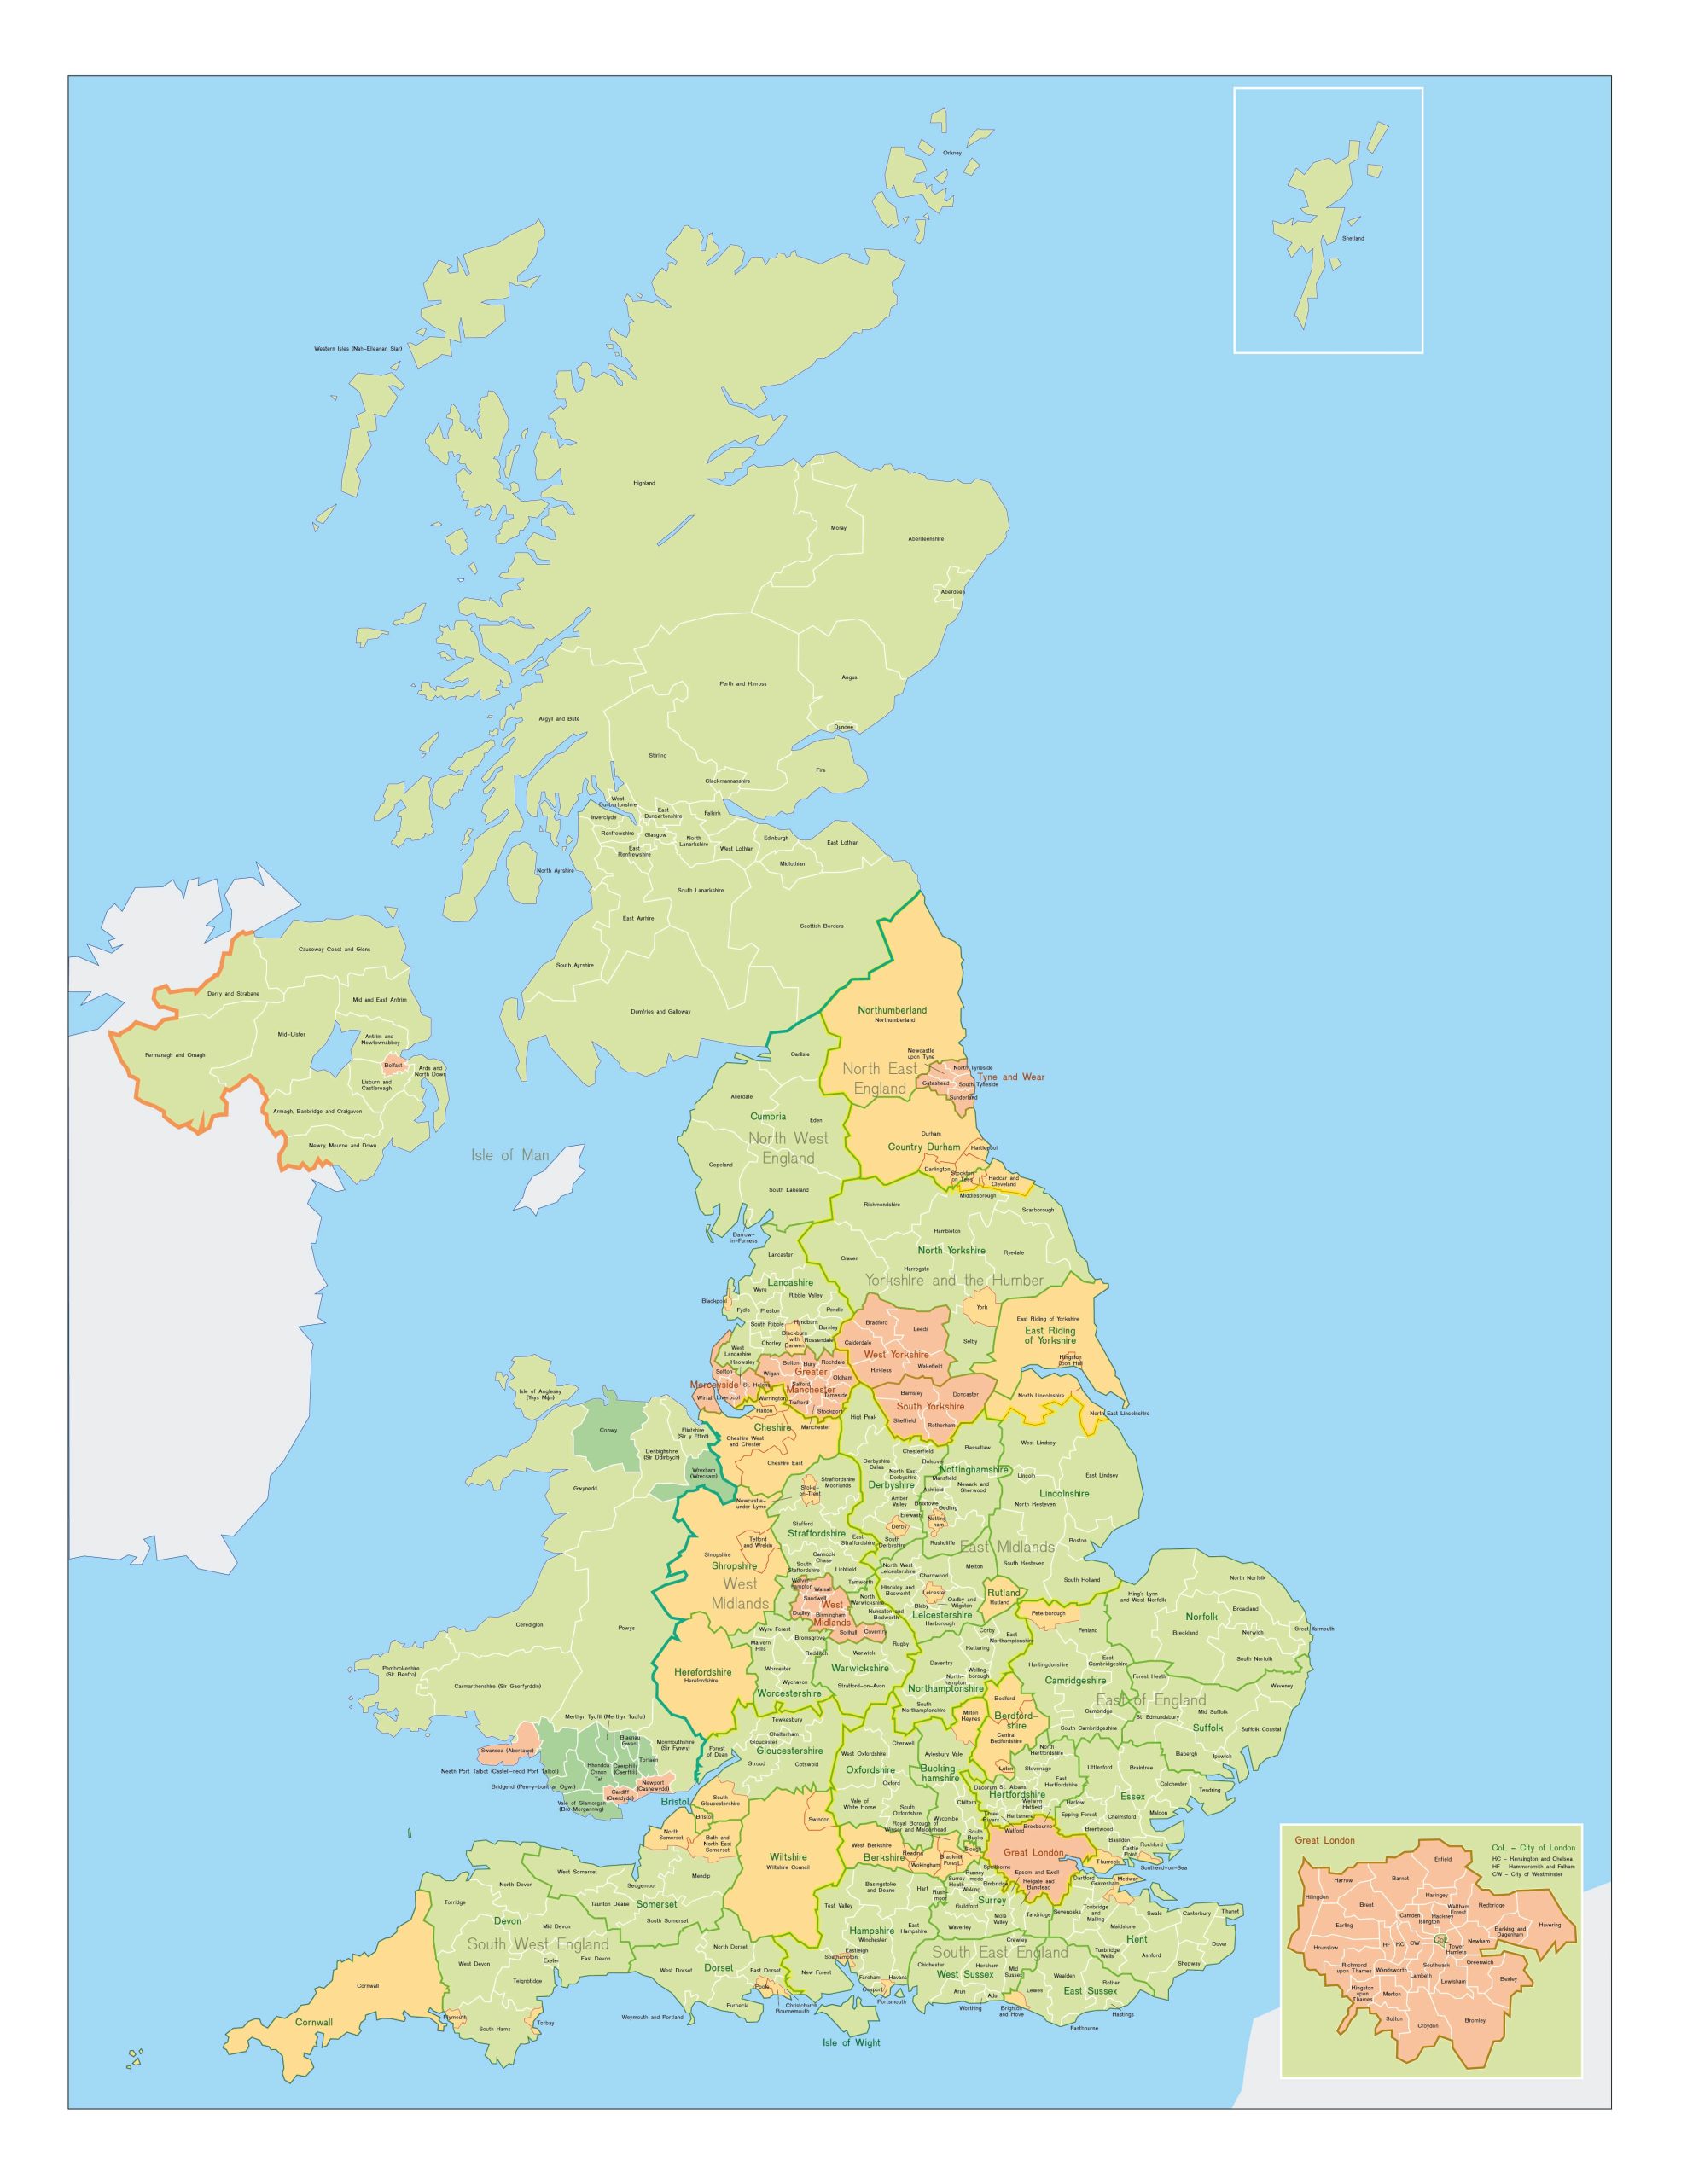 Britain на русском. Политическая карта Англии. Великобритания карта географическая. Карта Англии и Великобритании на русском языке. Великобритания на карте политическая карта.